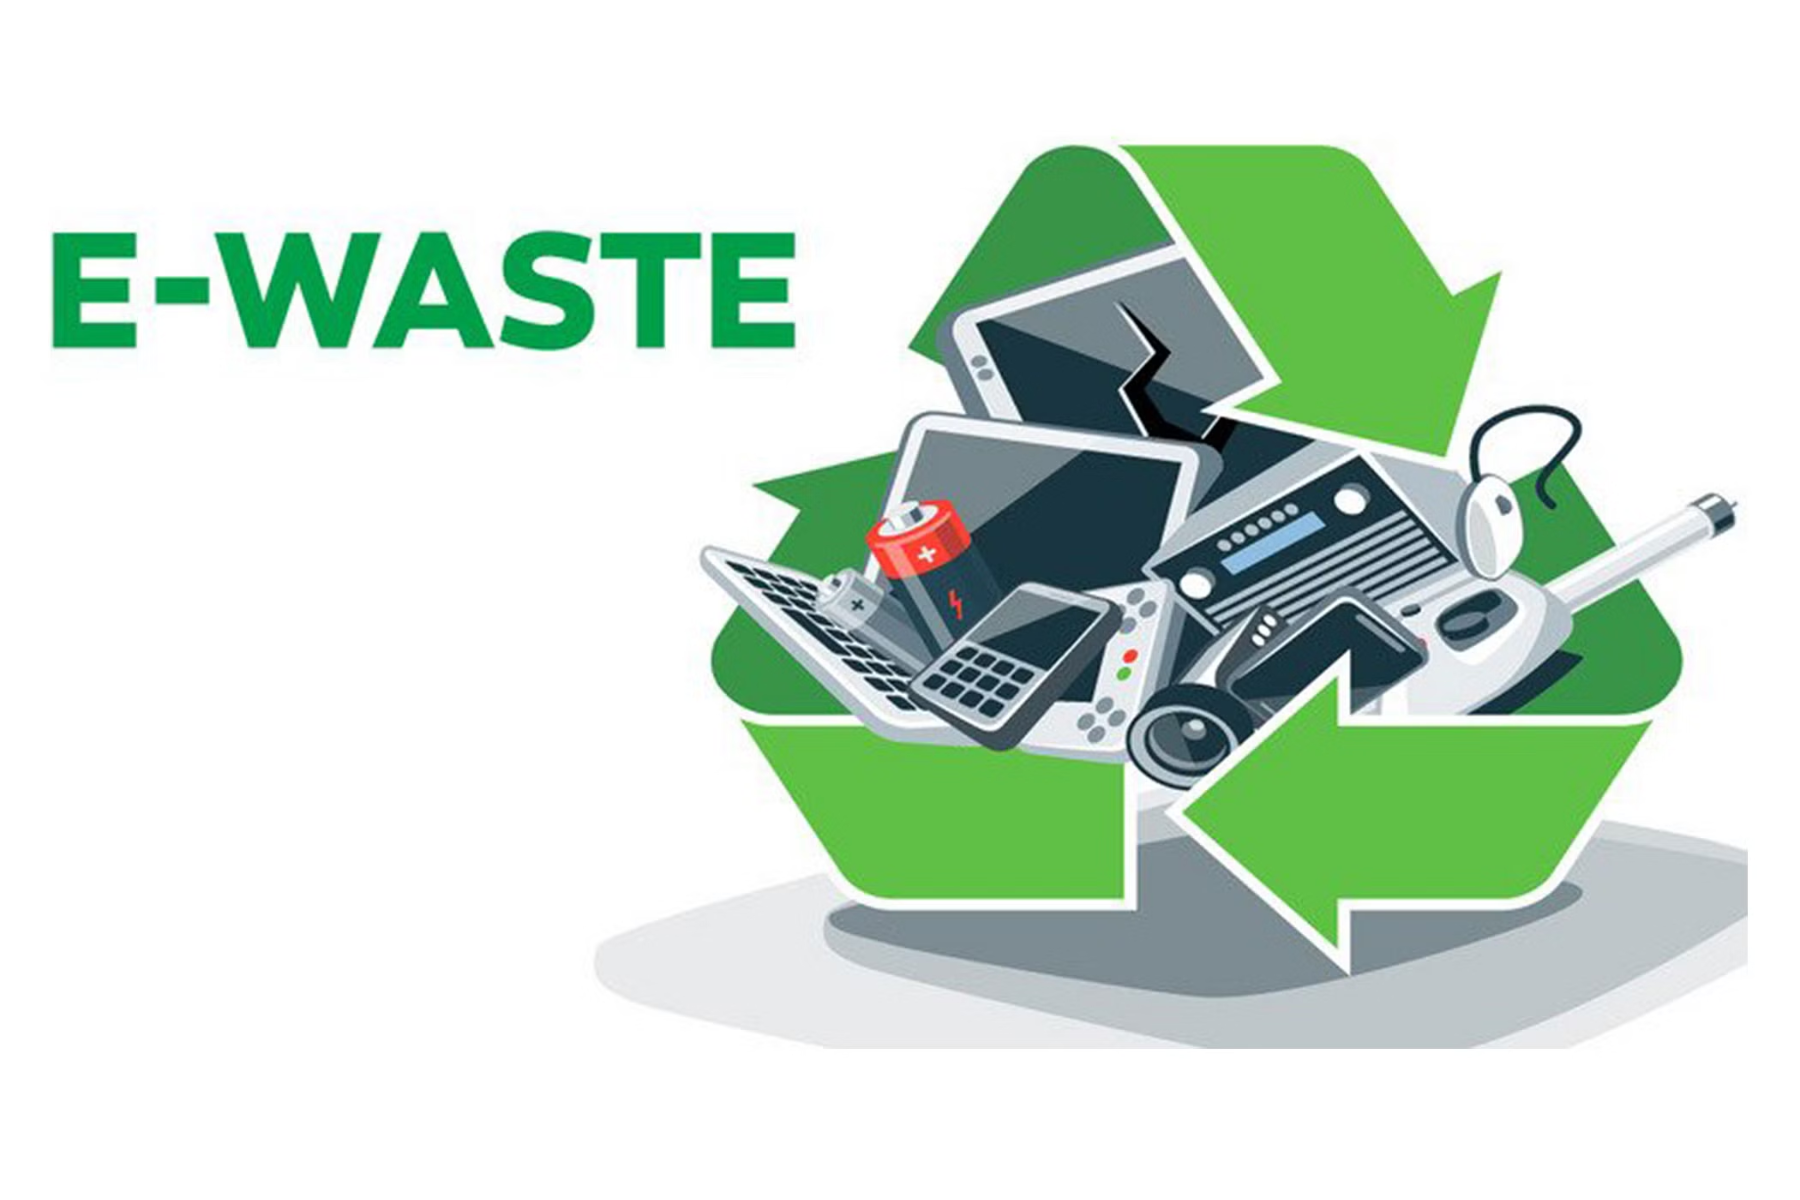 An e-waste logo